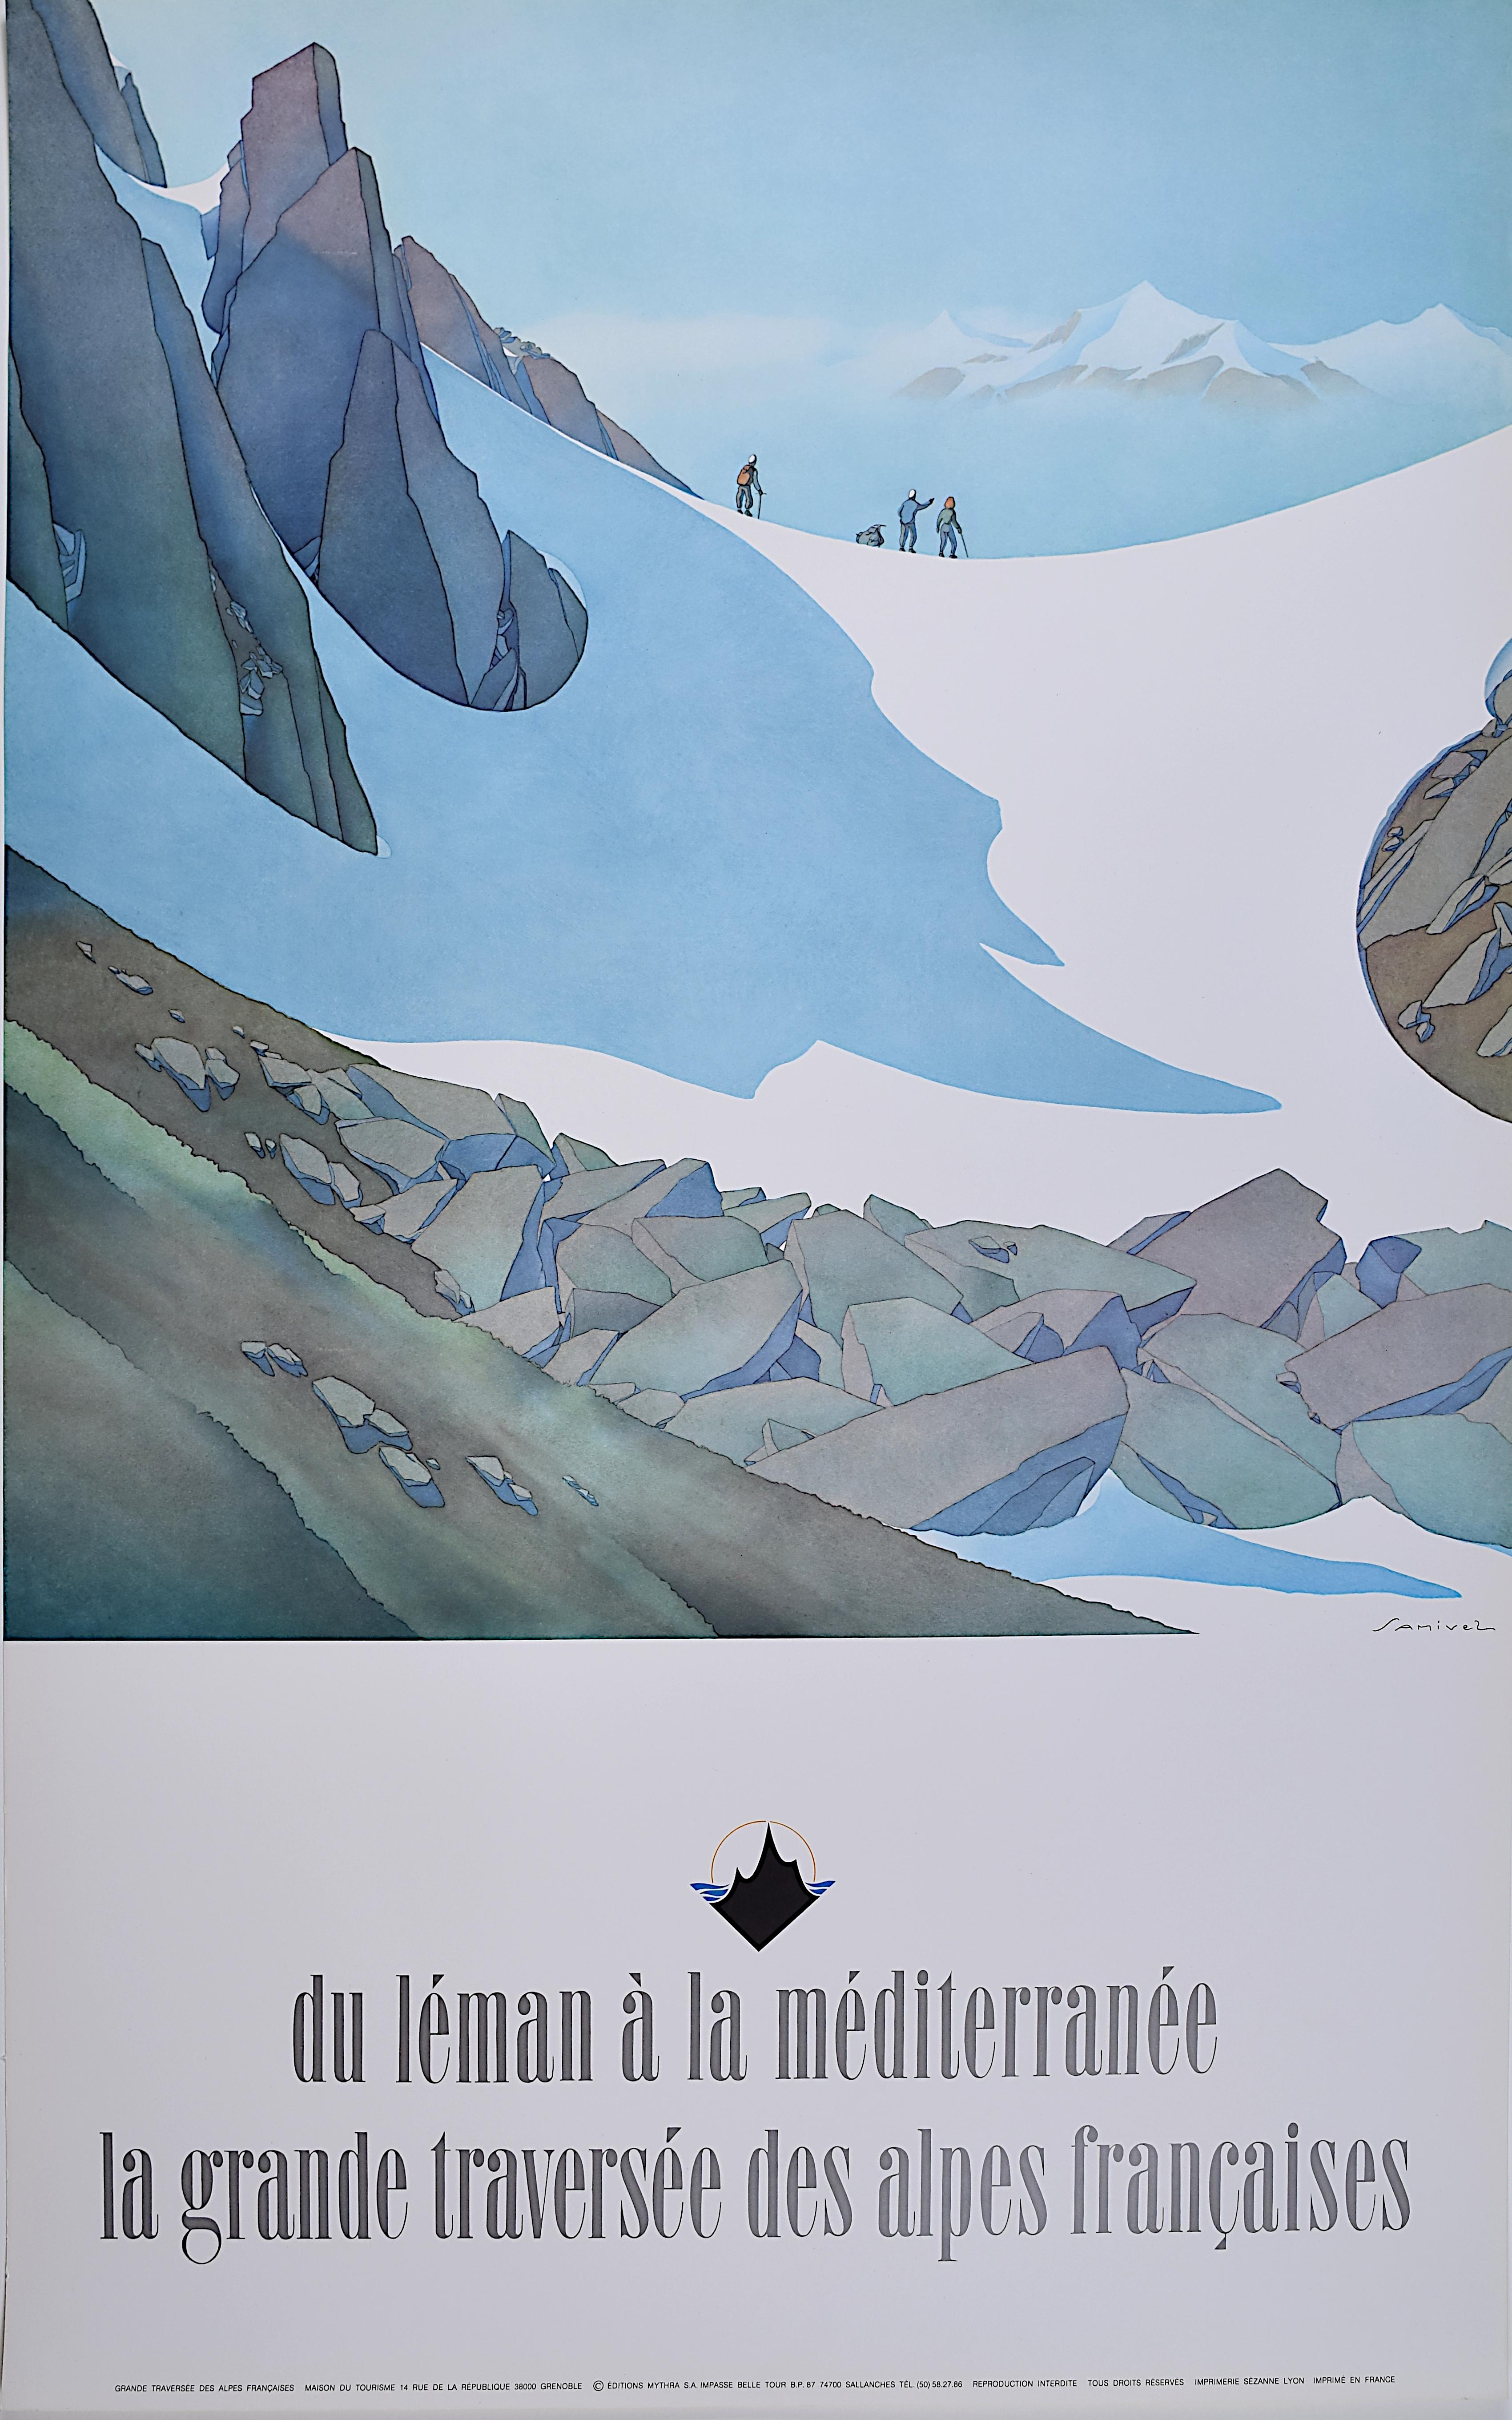 Samivel Paul Gayet-Tancrède  Landscape Print - Samivel original vintage French Alps skiing poster